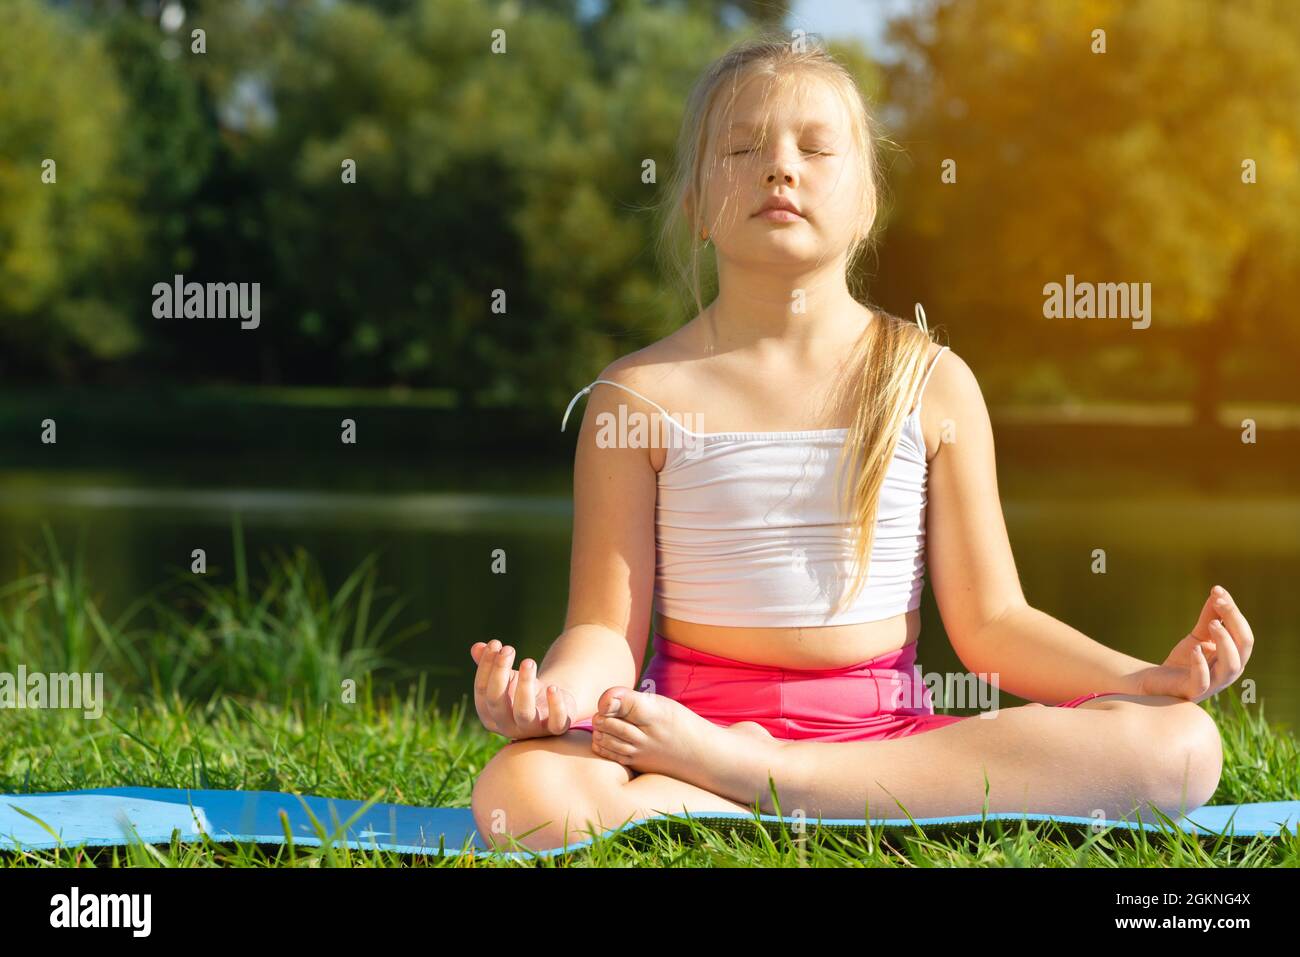 Petite mignonne caucasienne pratiquant le yoga pose sur tapis dans le parc, la santé et l'exercice concept. Banque D'Images